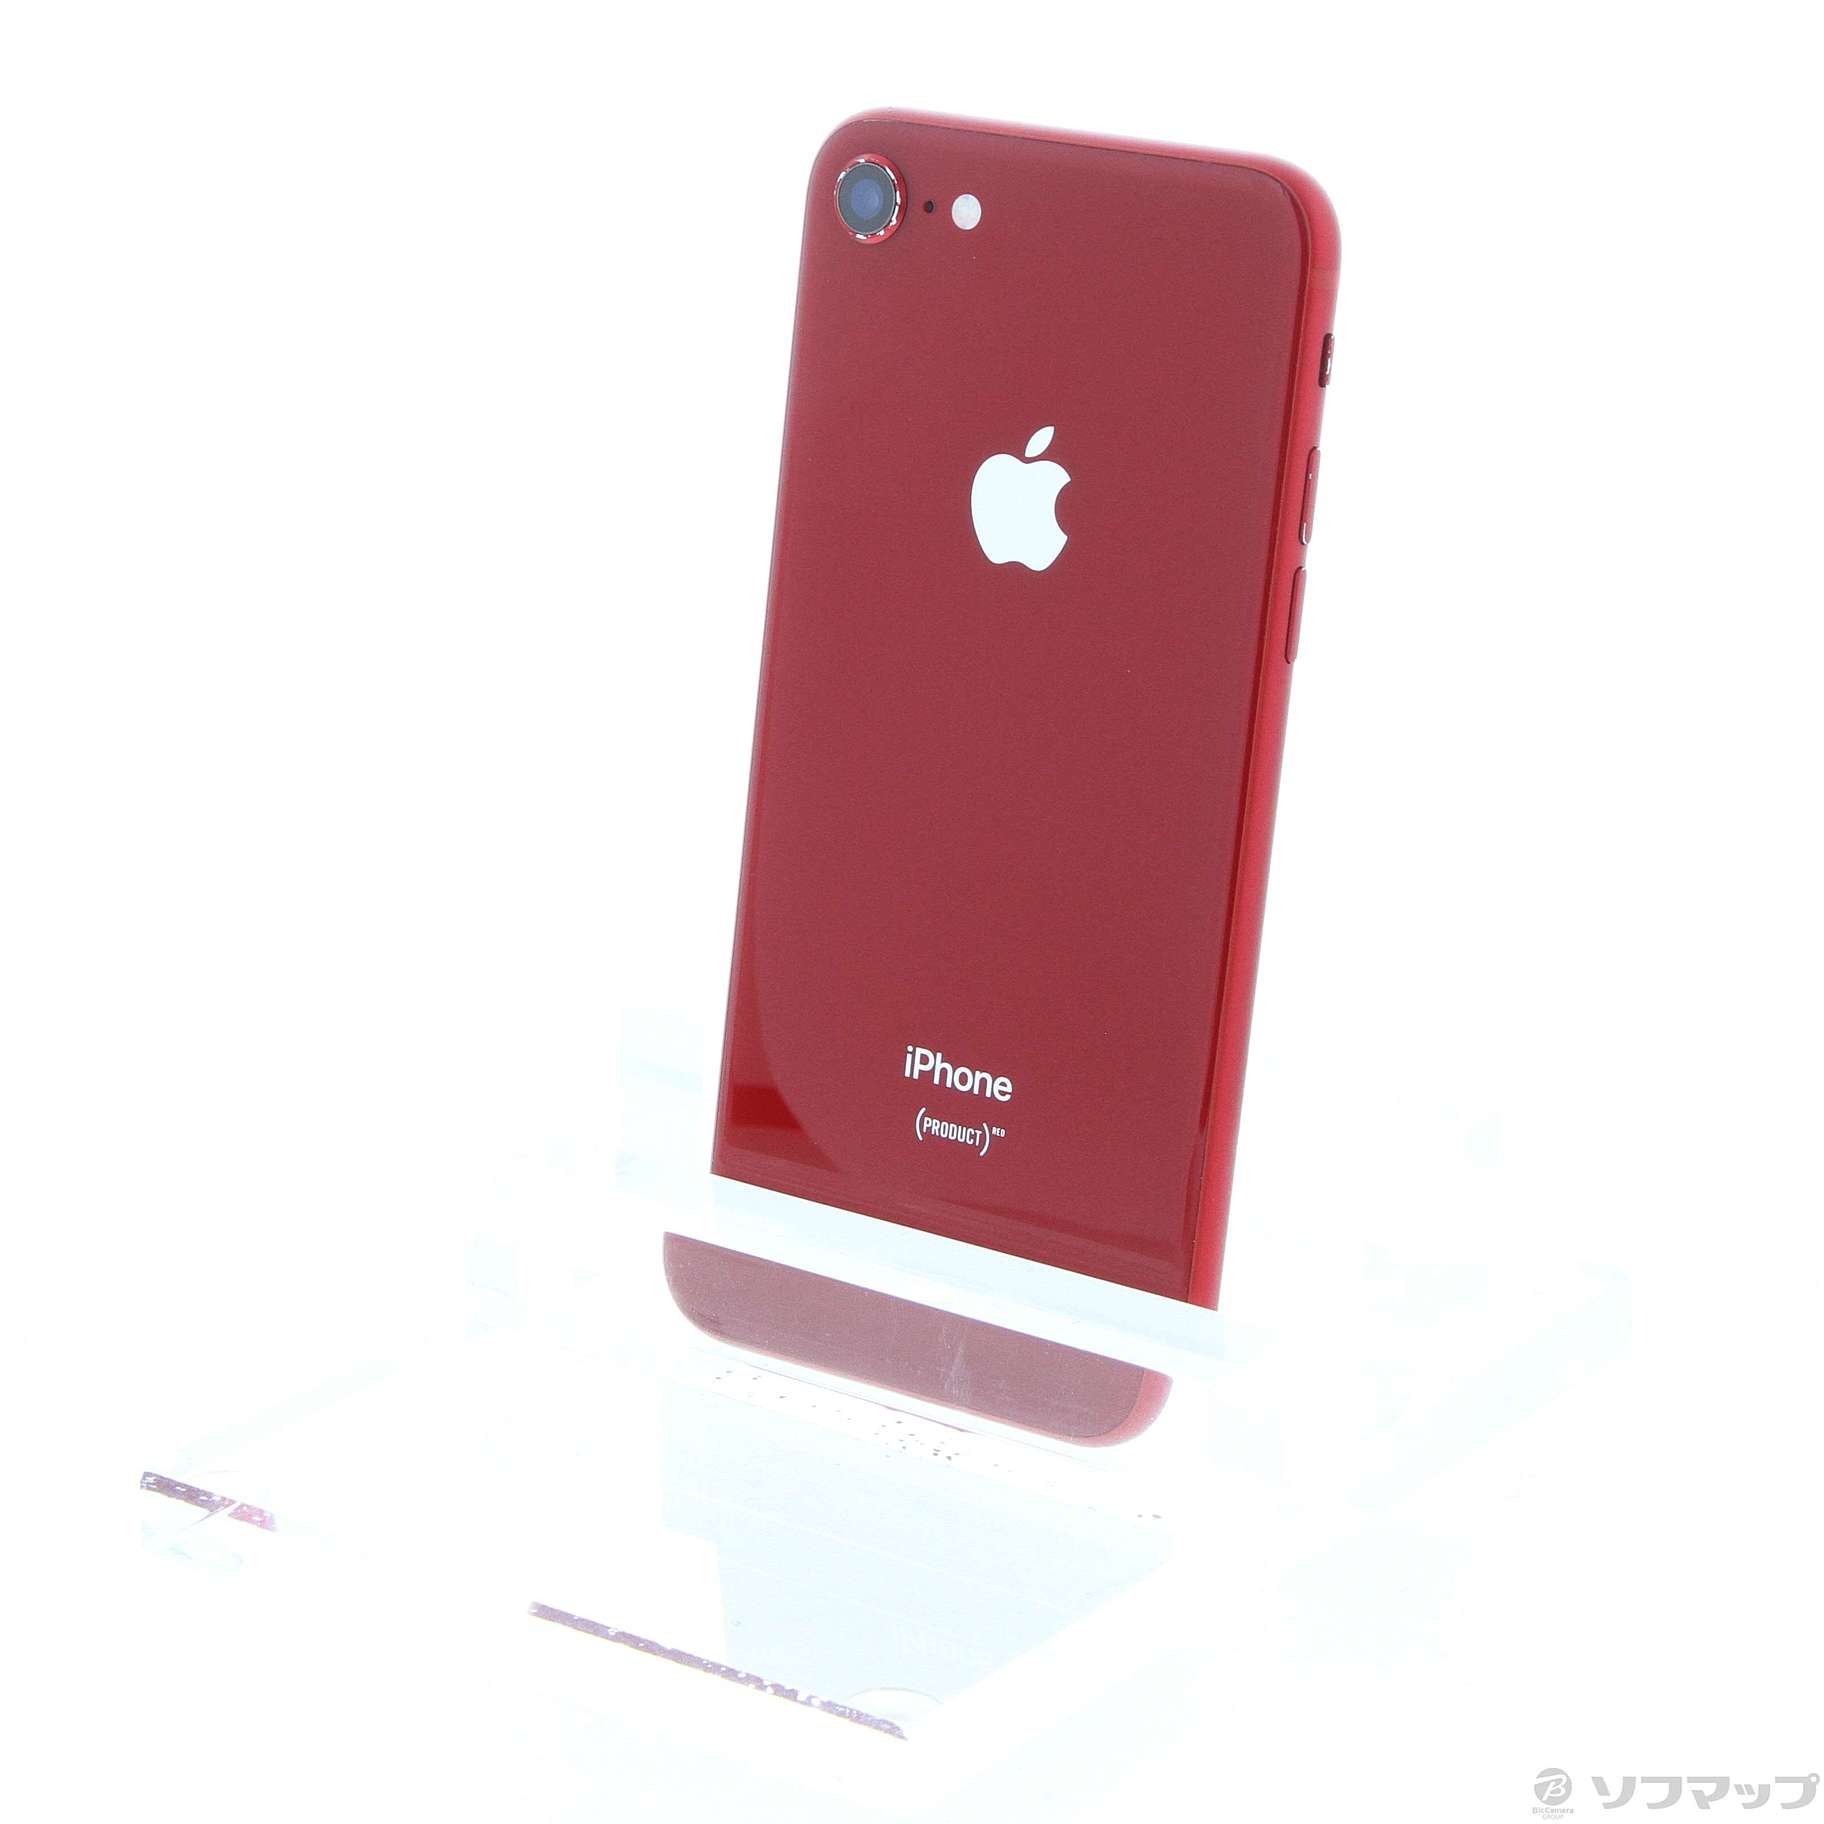 株式会社CRESCE Apple iPhone8 64GB プロダクトレッド SIMフリー